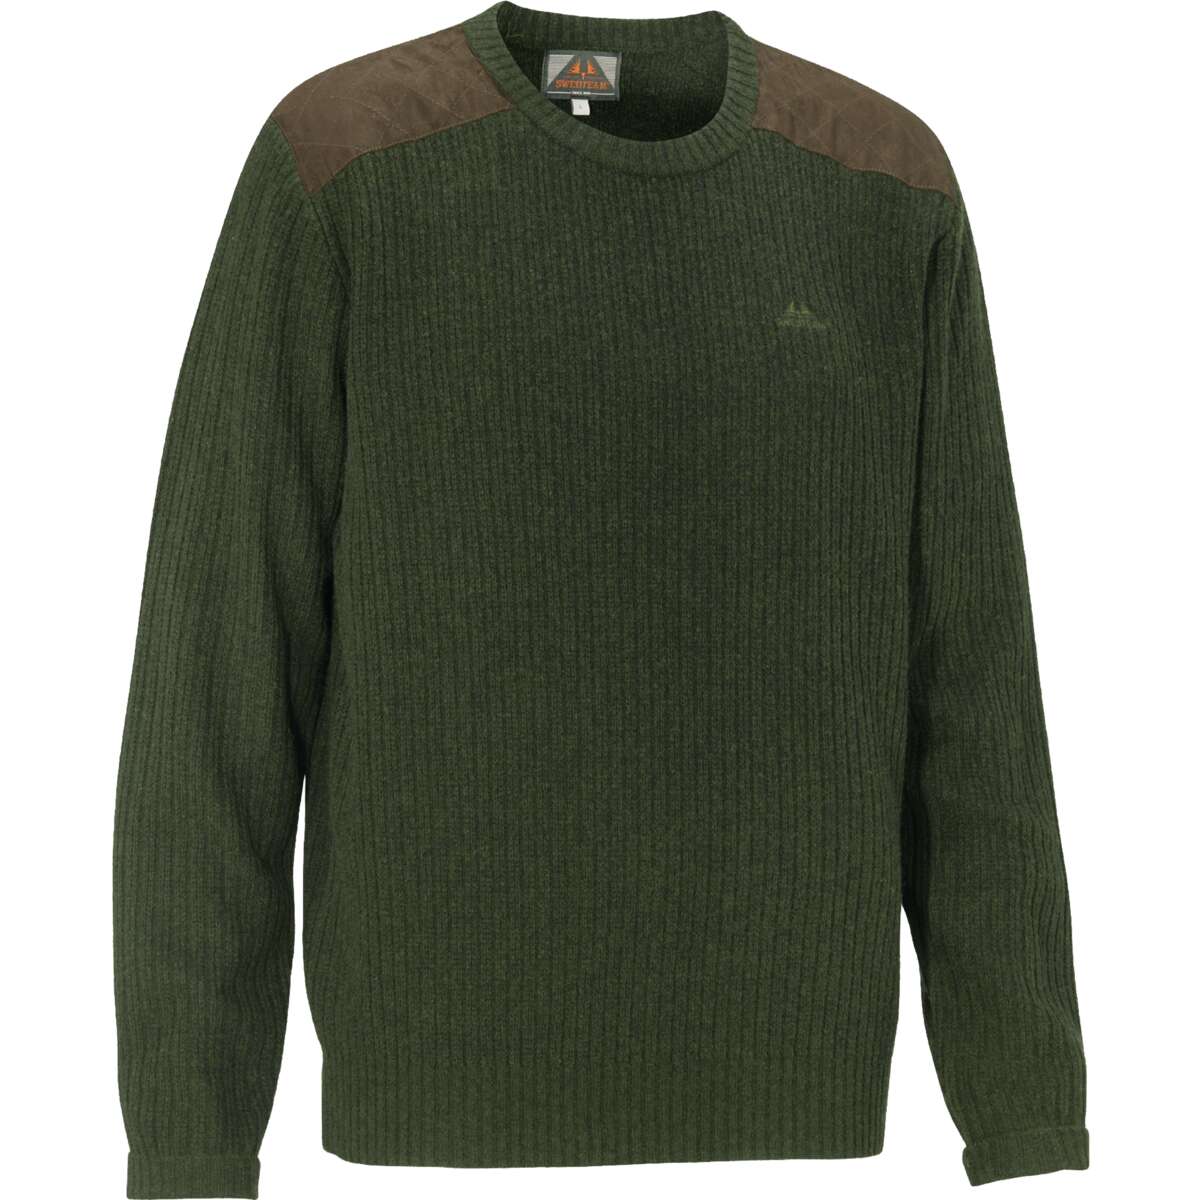 Derek Sweater Loden Green - XL thumbnail